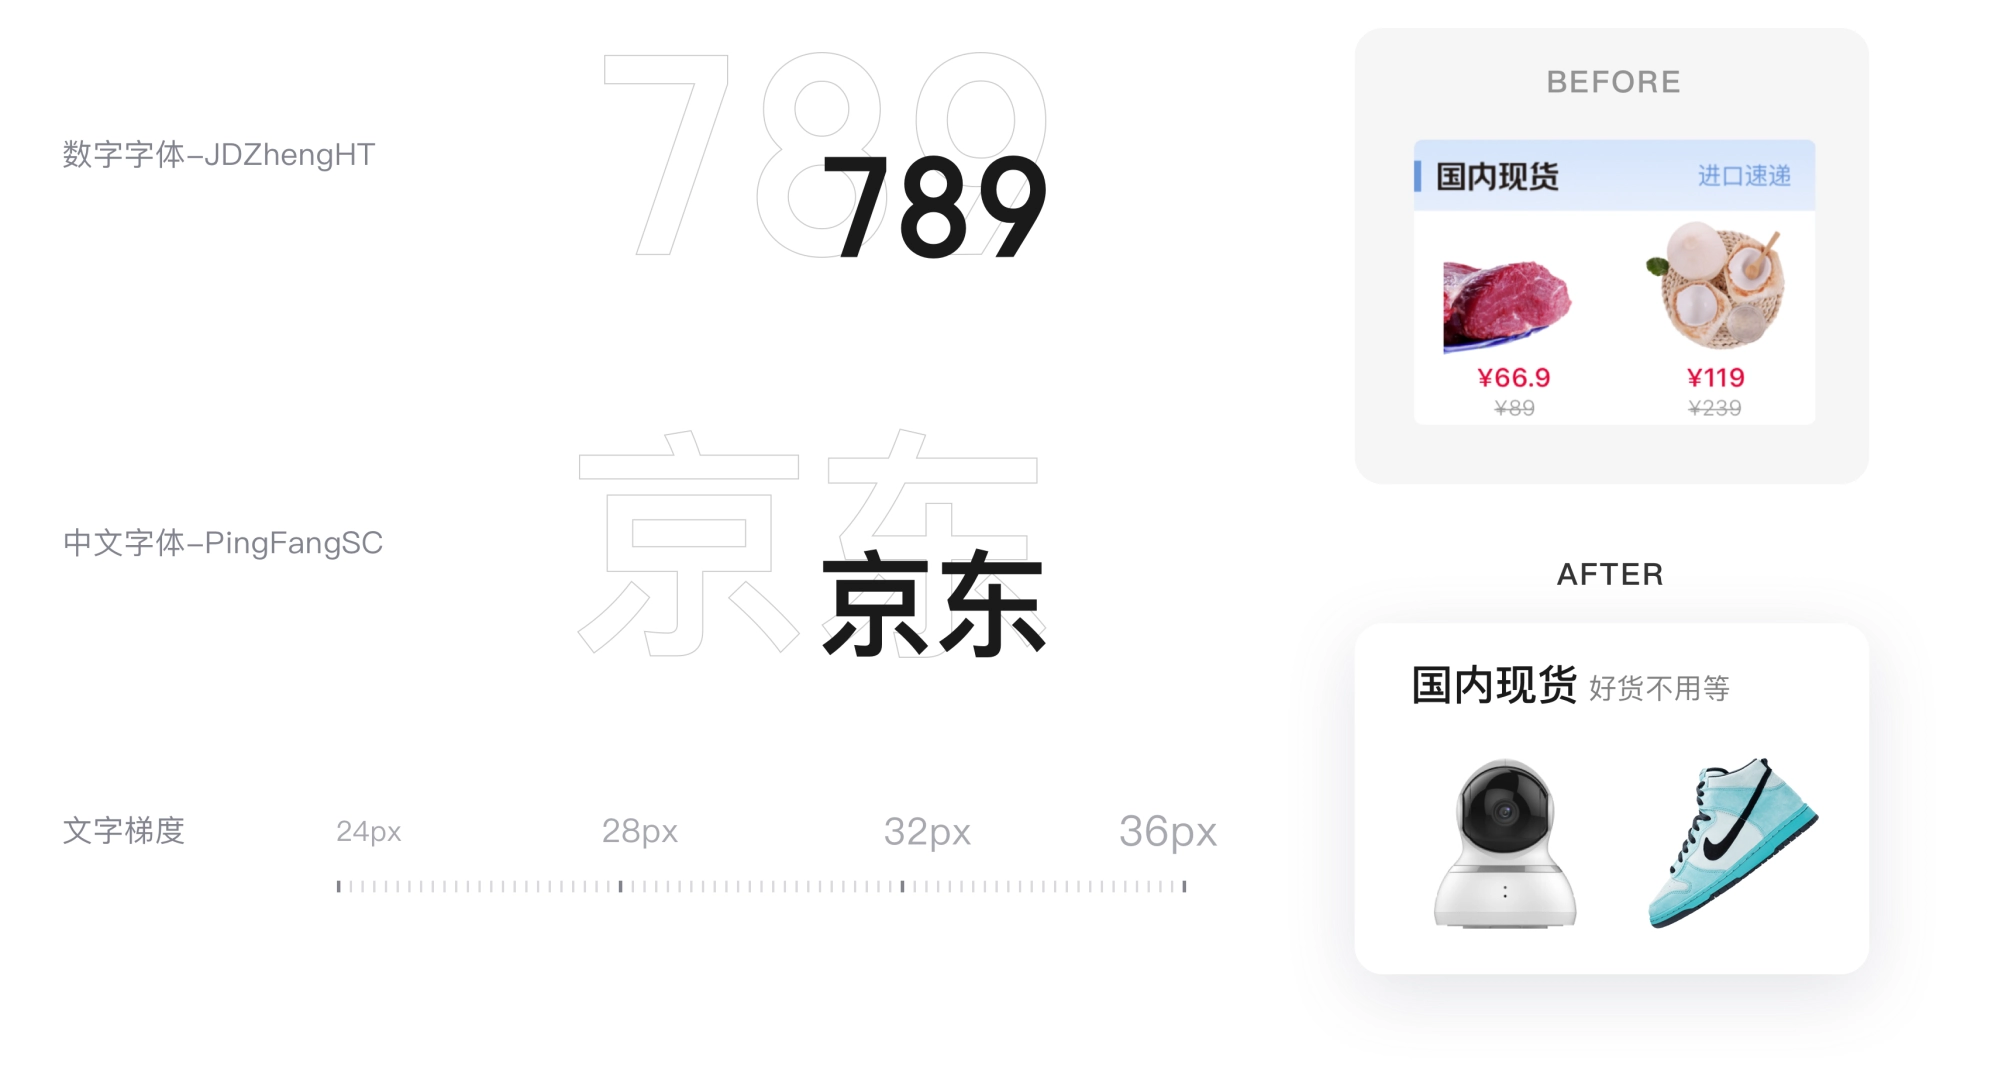 京东｜京东国际V9.0频道品牌升级新体验 - 图18